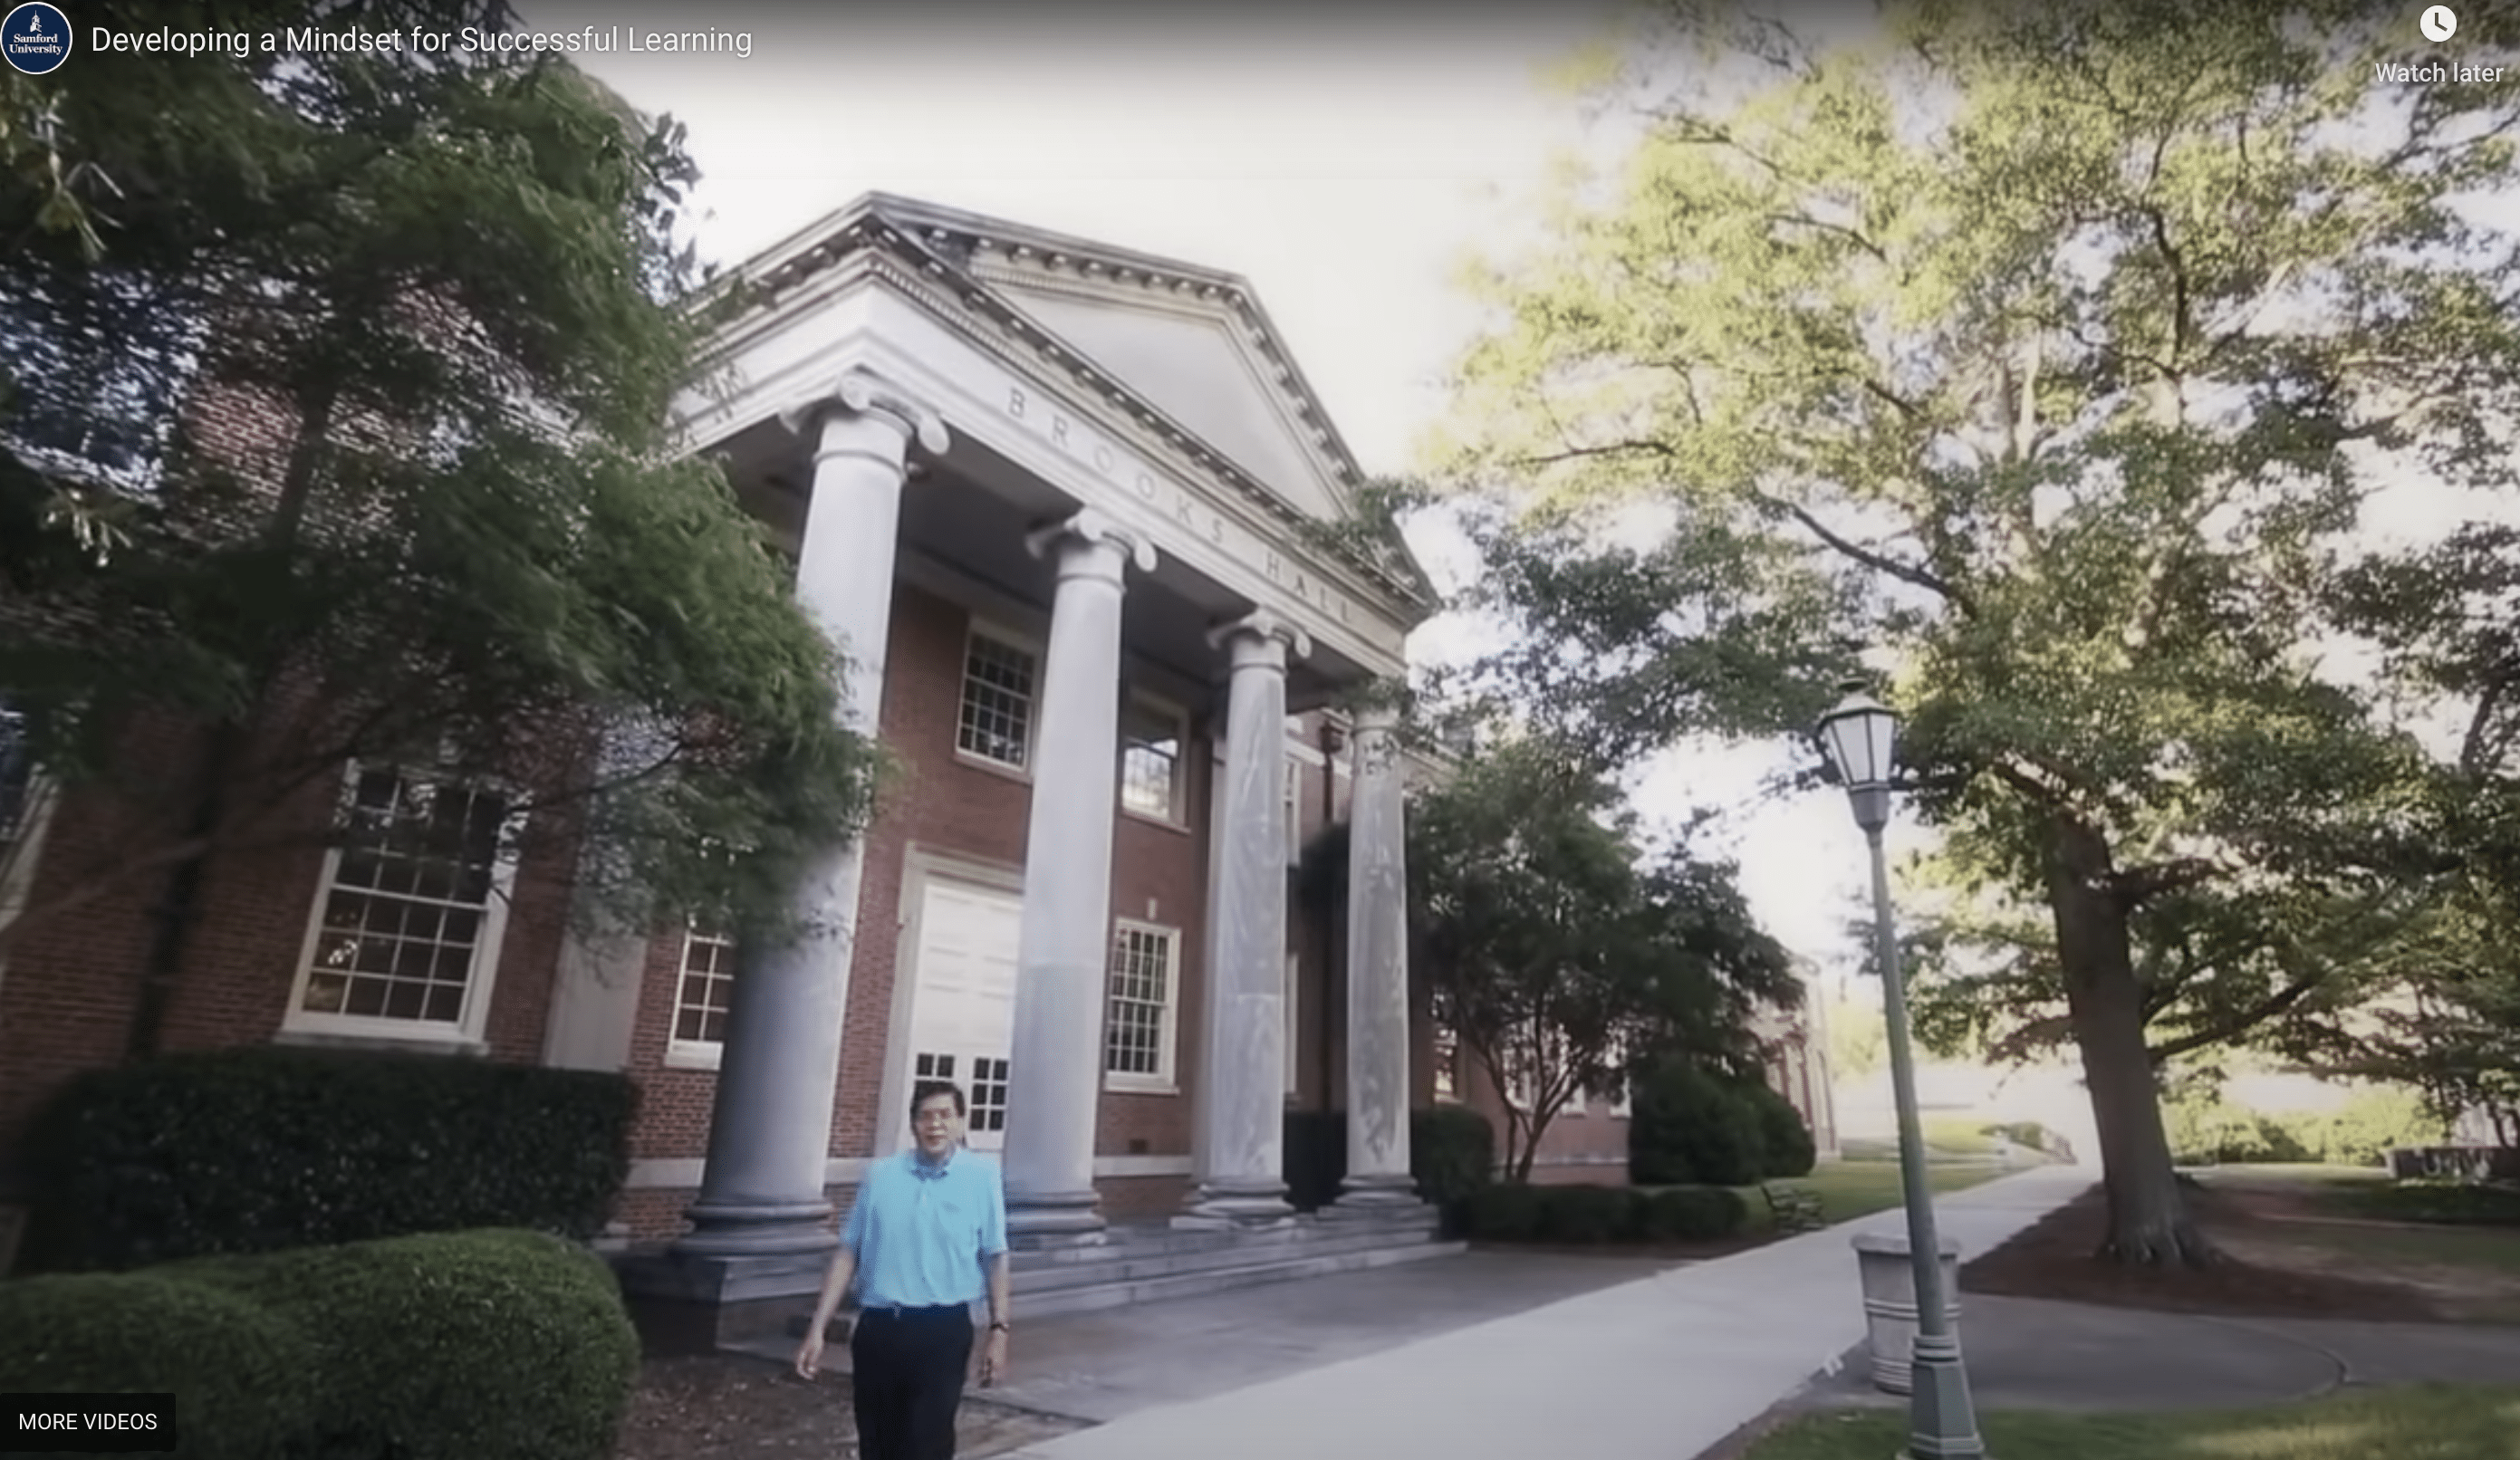 professor walking in front of university building